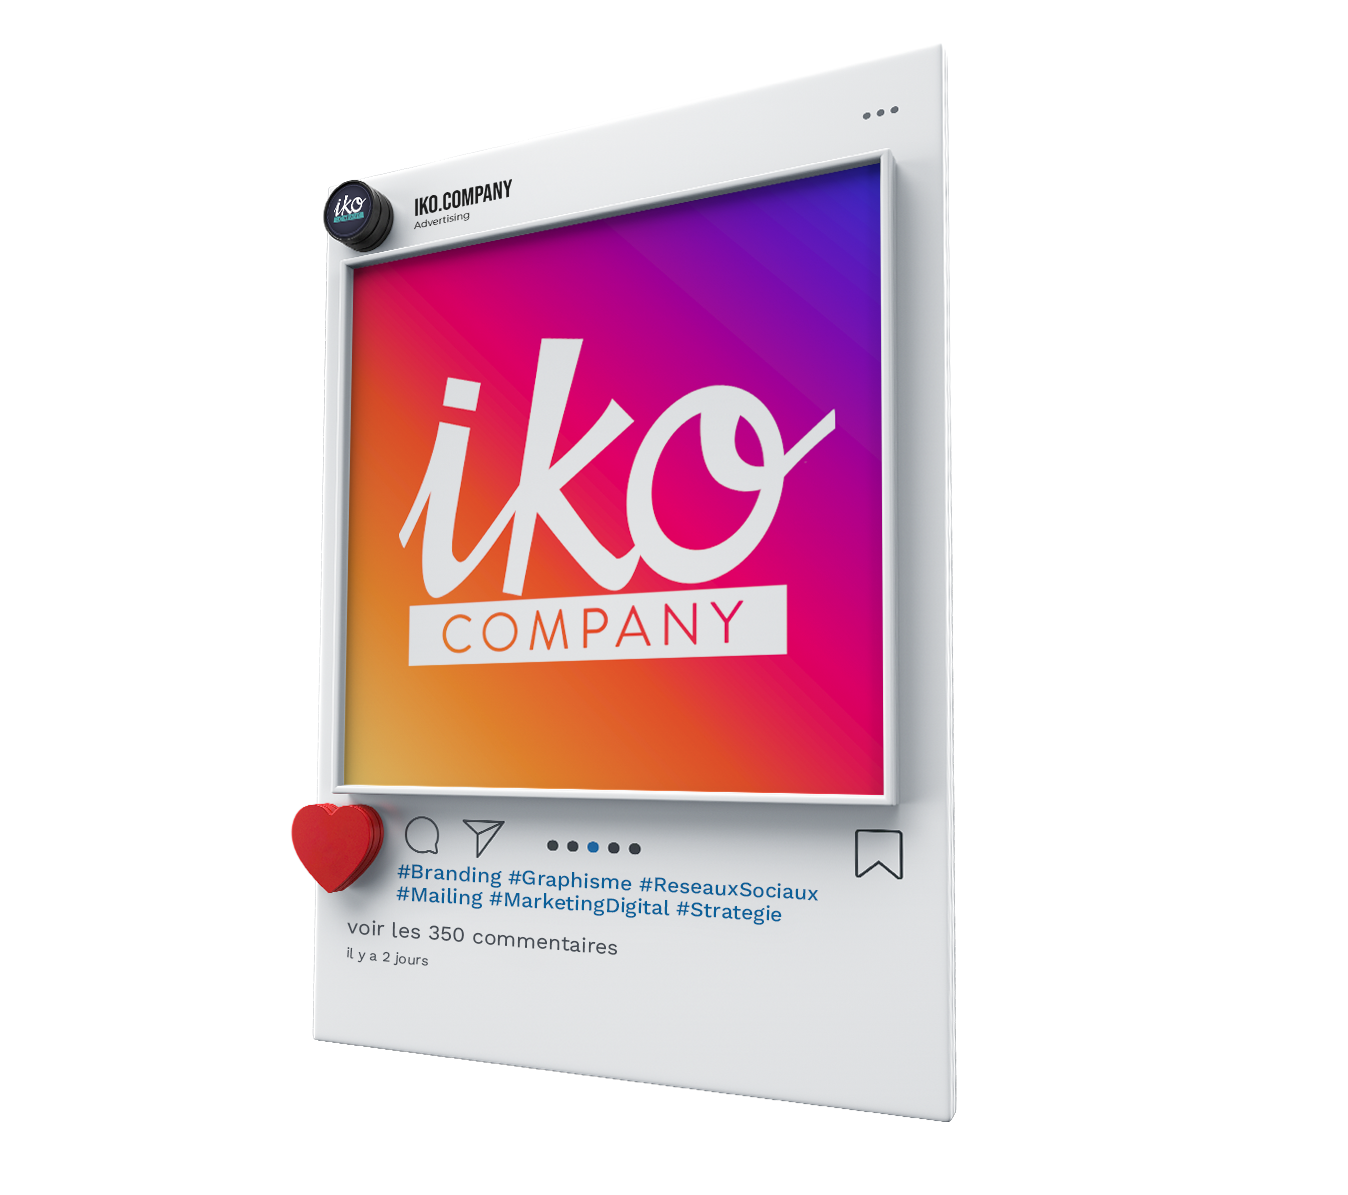 Iko Company - Agence de Marketing, Graphisme et Sites Web dans les Vosges